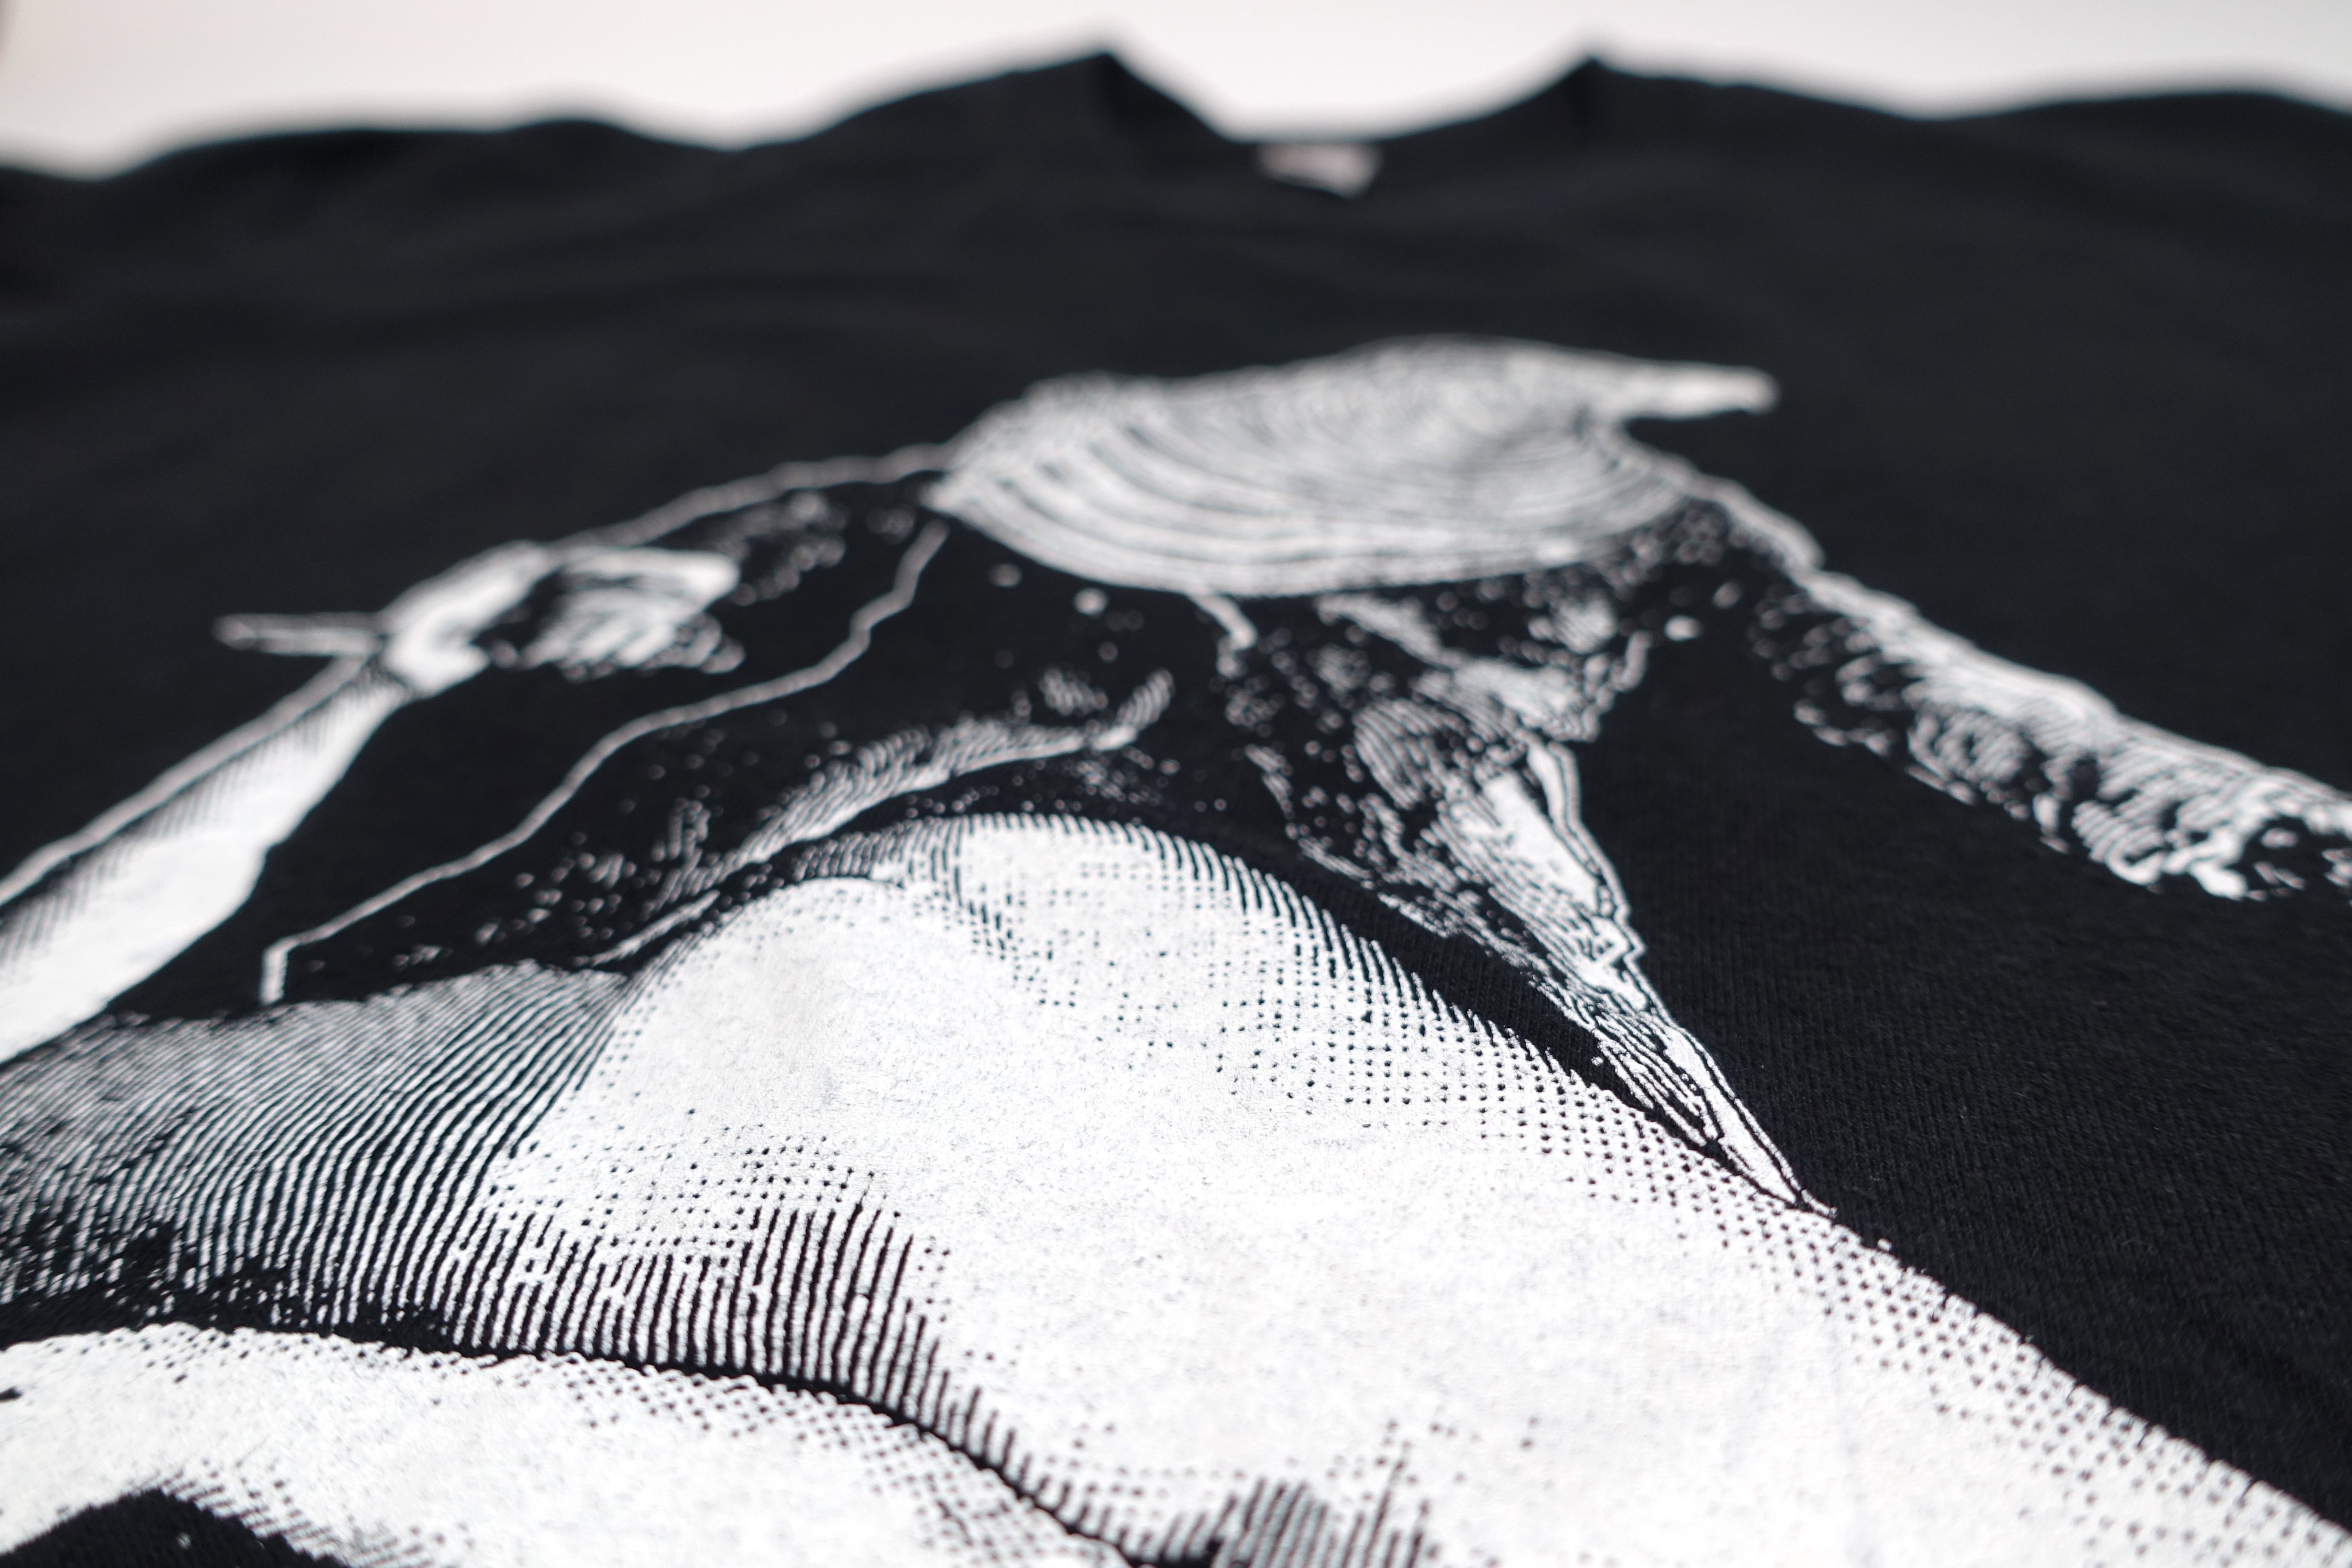 the Mars Volta – Frances The Mute 00's Tour Shirt Size Medium